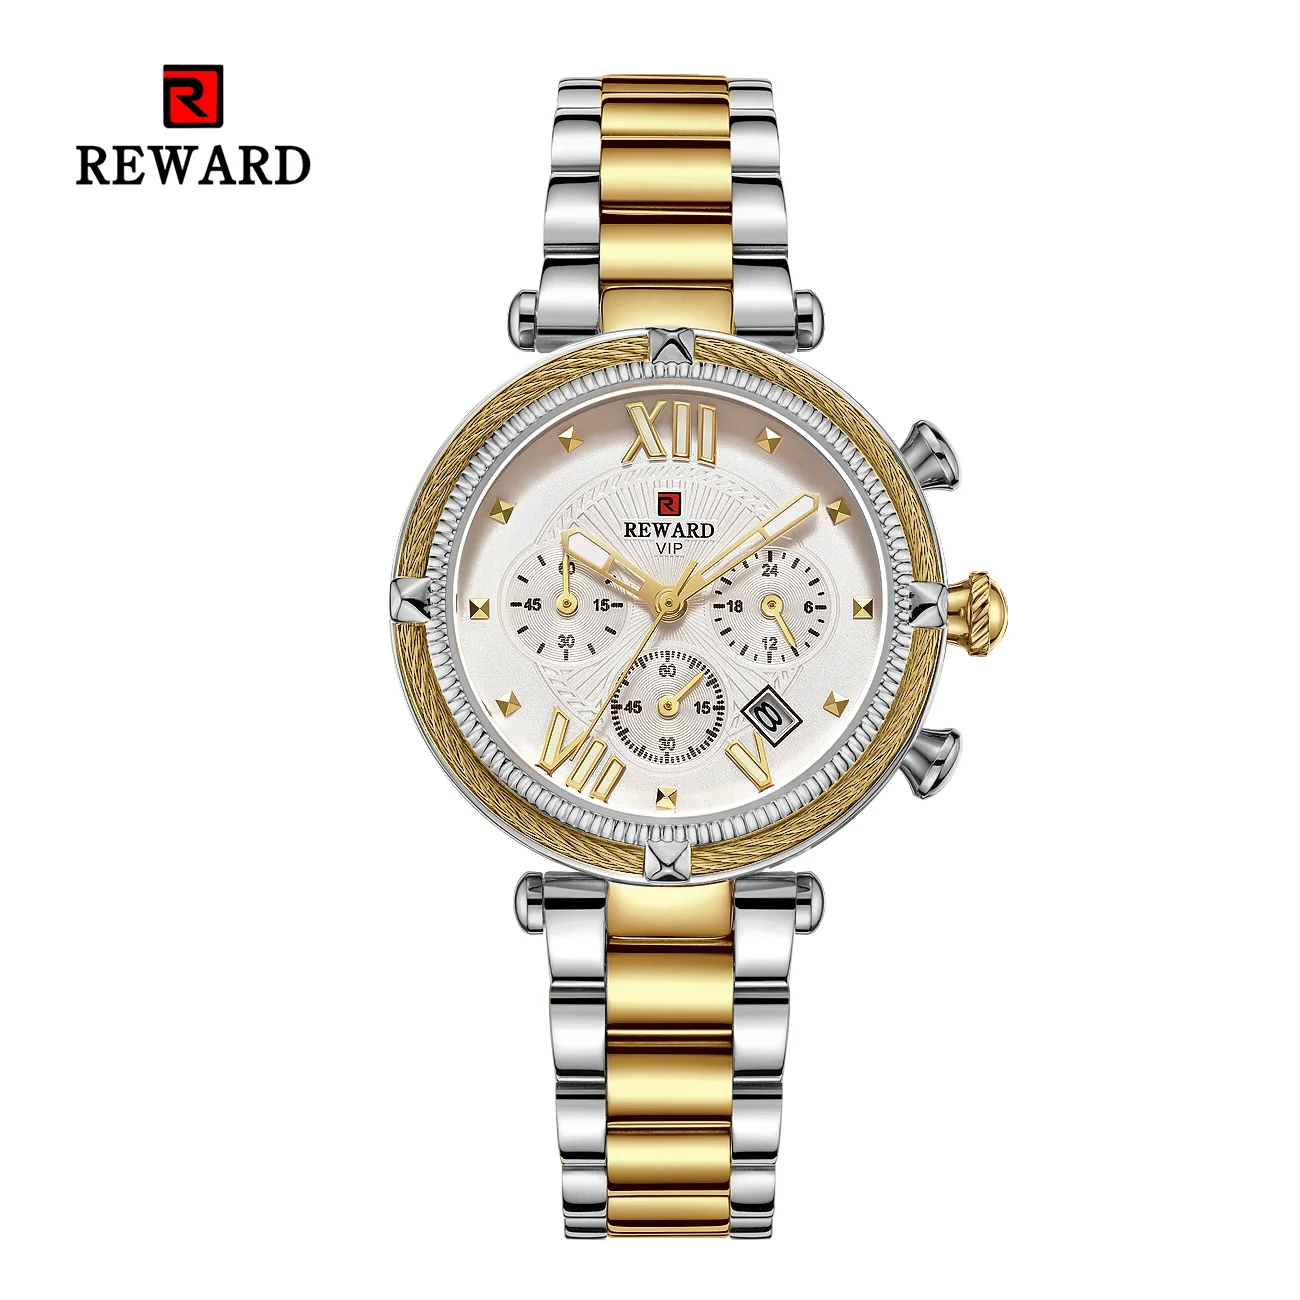 REWARD Hot Brand Luxury Women Watches Fashion Stainless Steel Band Quartz Sport Watch Luminous Ladies Wrist Watch RD63084L